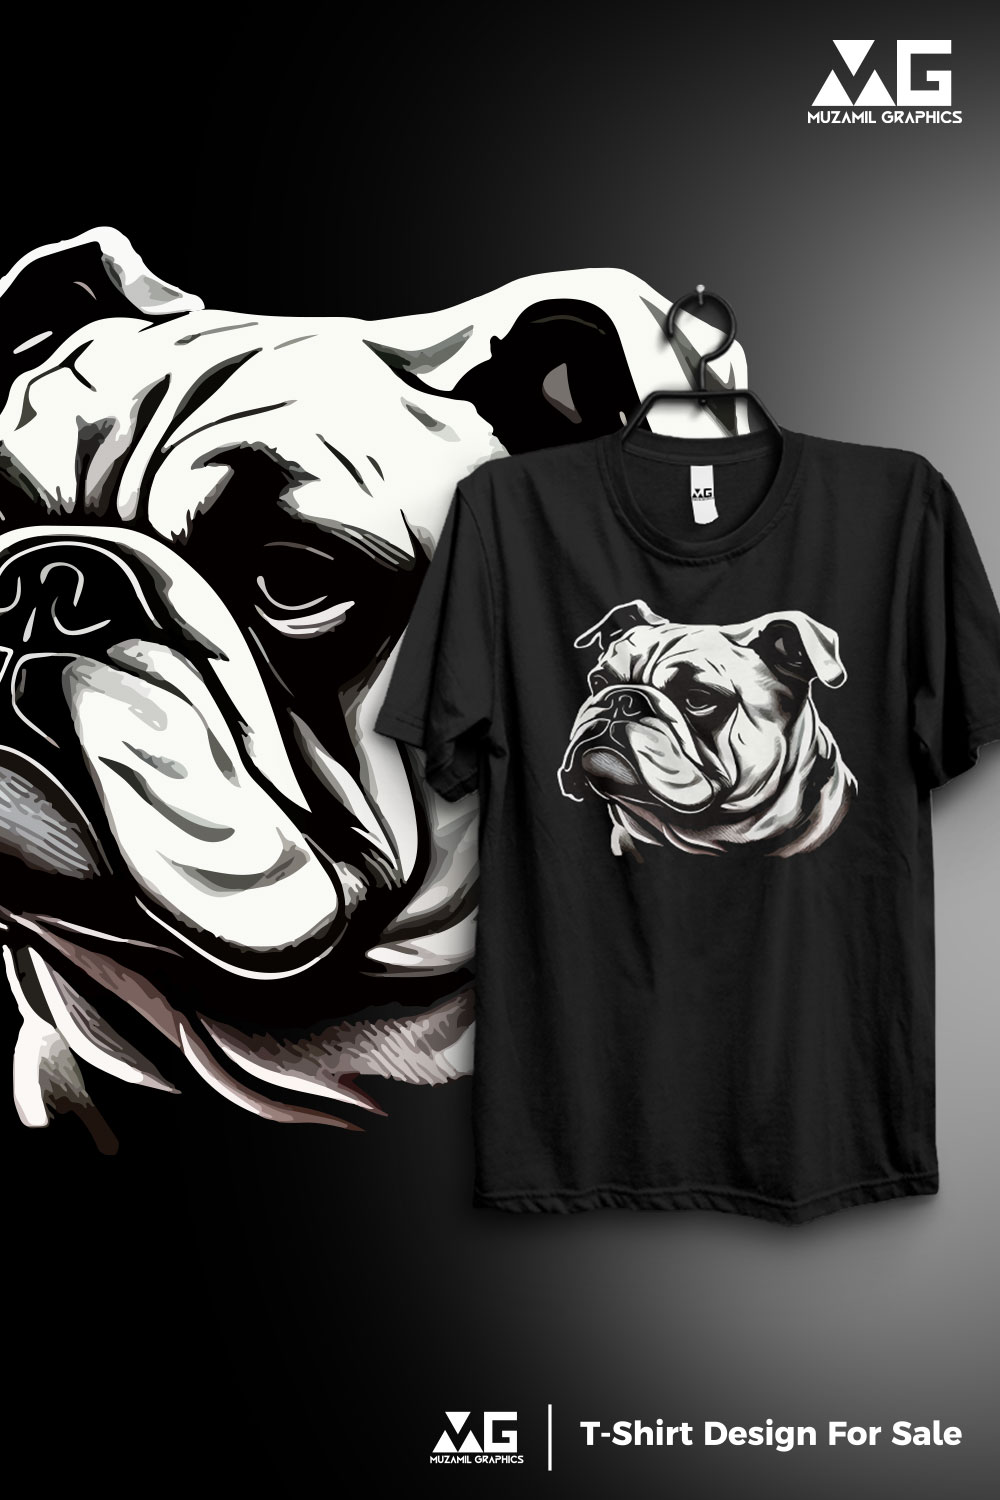 T-shirt design for bull dog pinterest preview image.